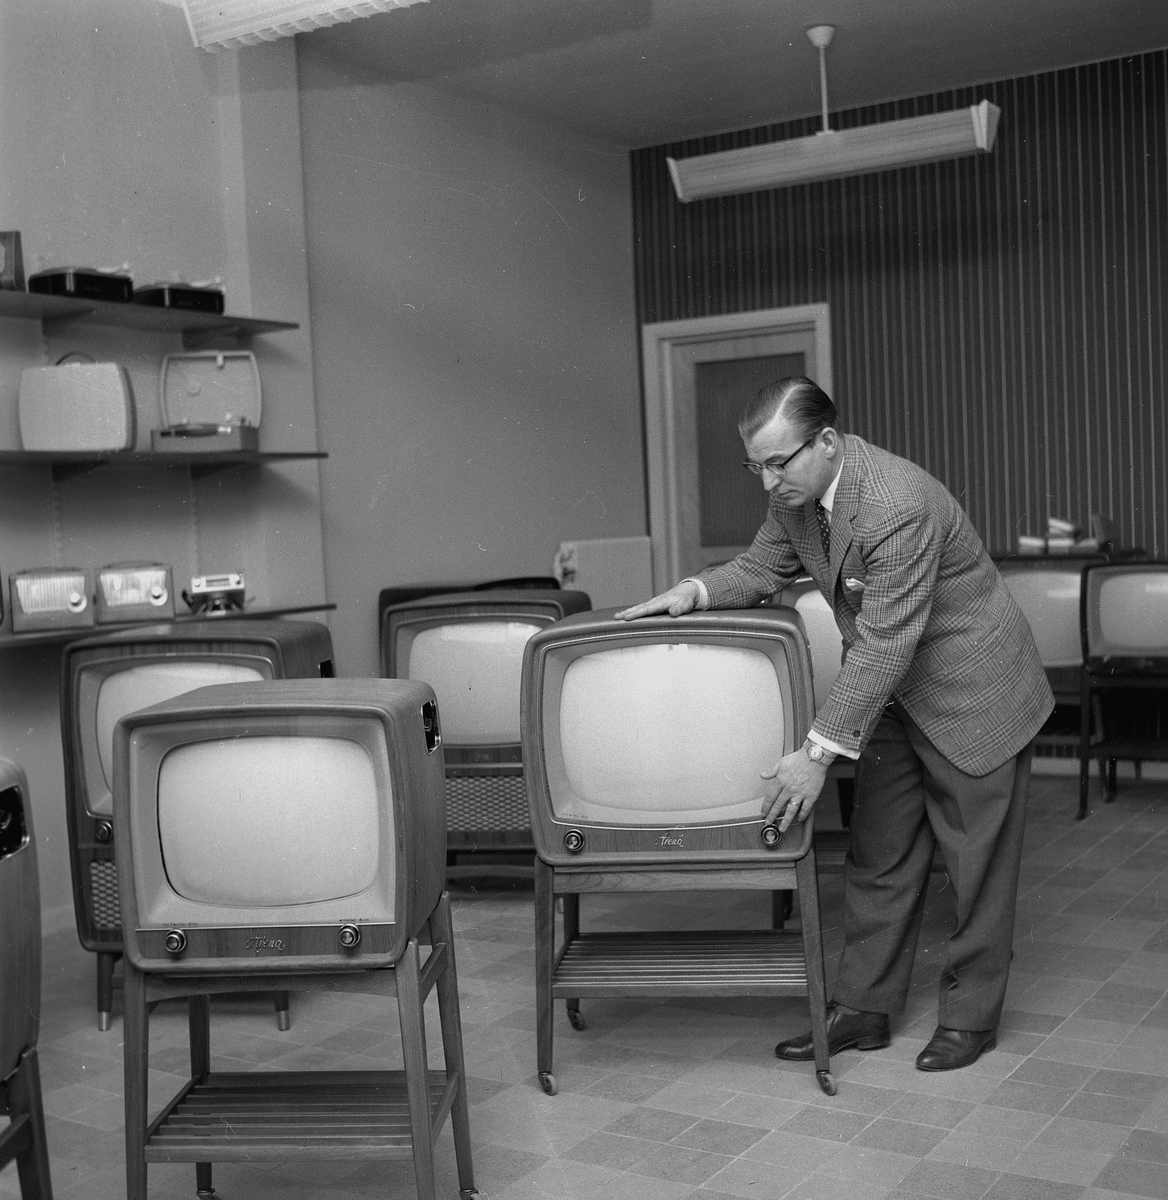 Falls TV-affär.
6 december 1958.